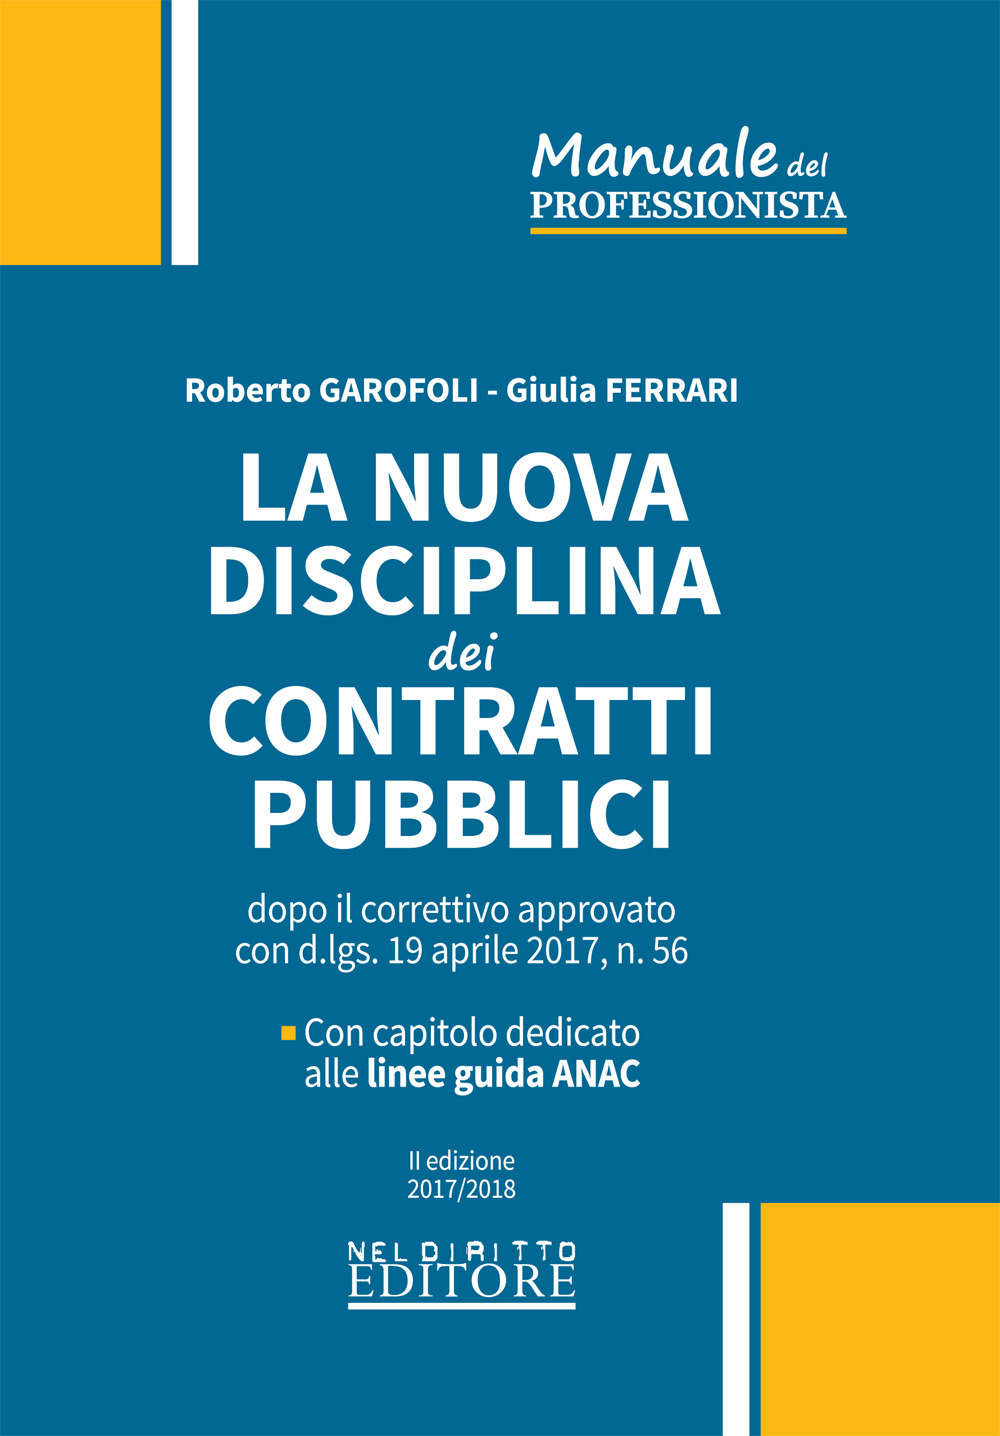 La nuova disciplina dei contratti pubblici dopo il correttivo approvato con d.lgs. 19 aprile 2017, n. 56